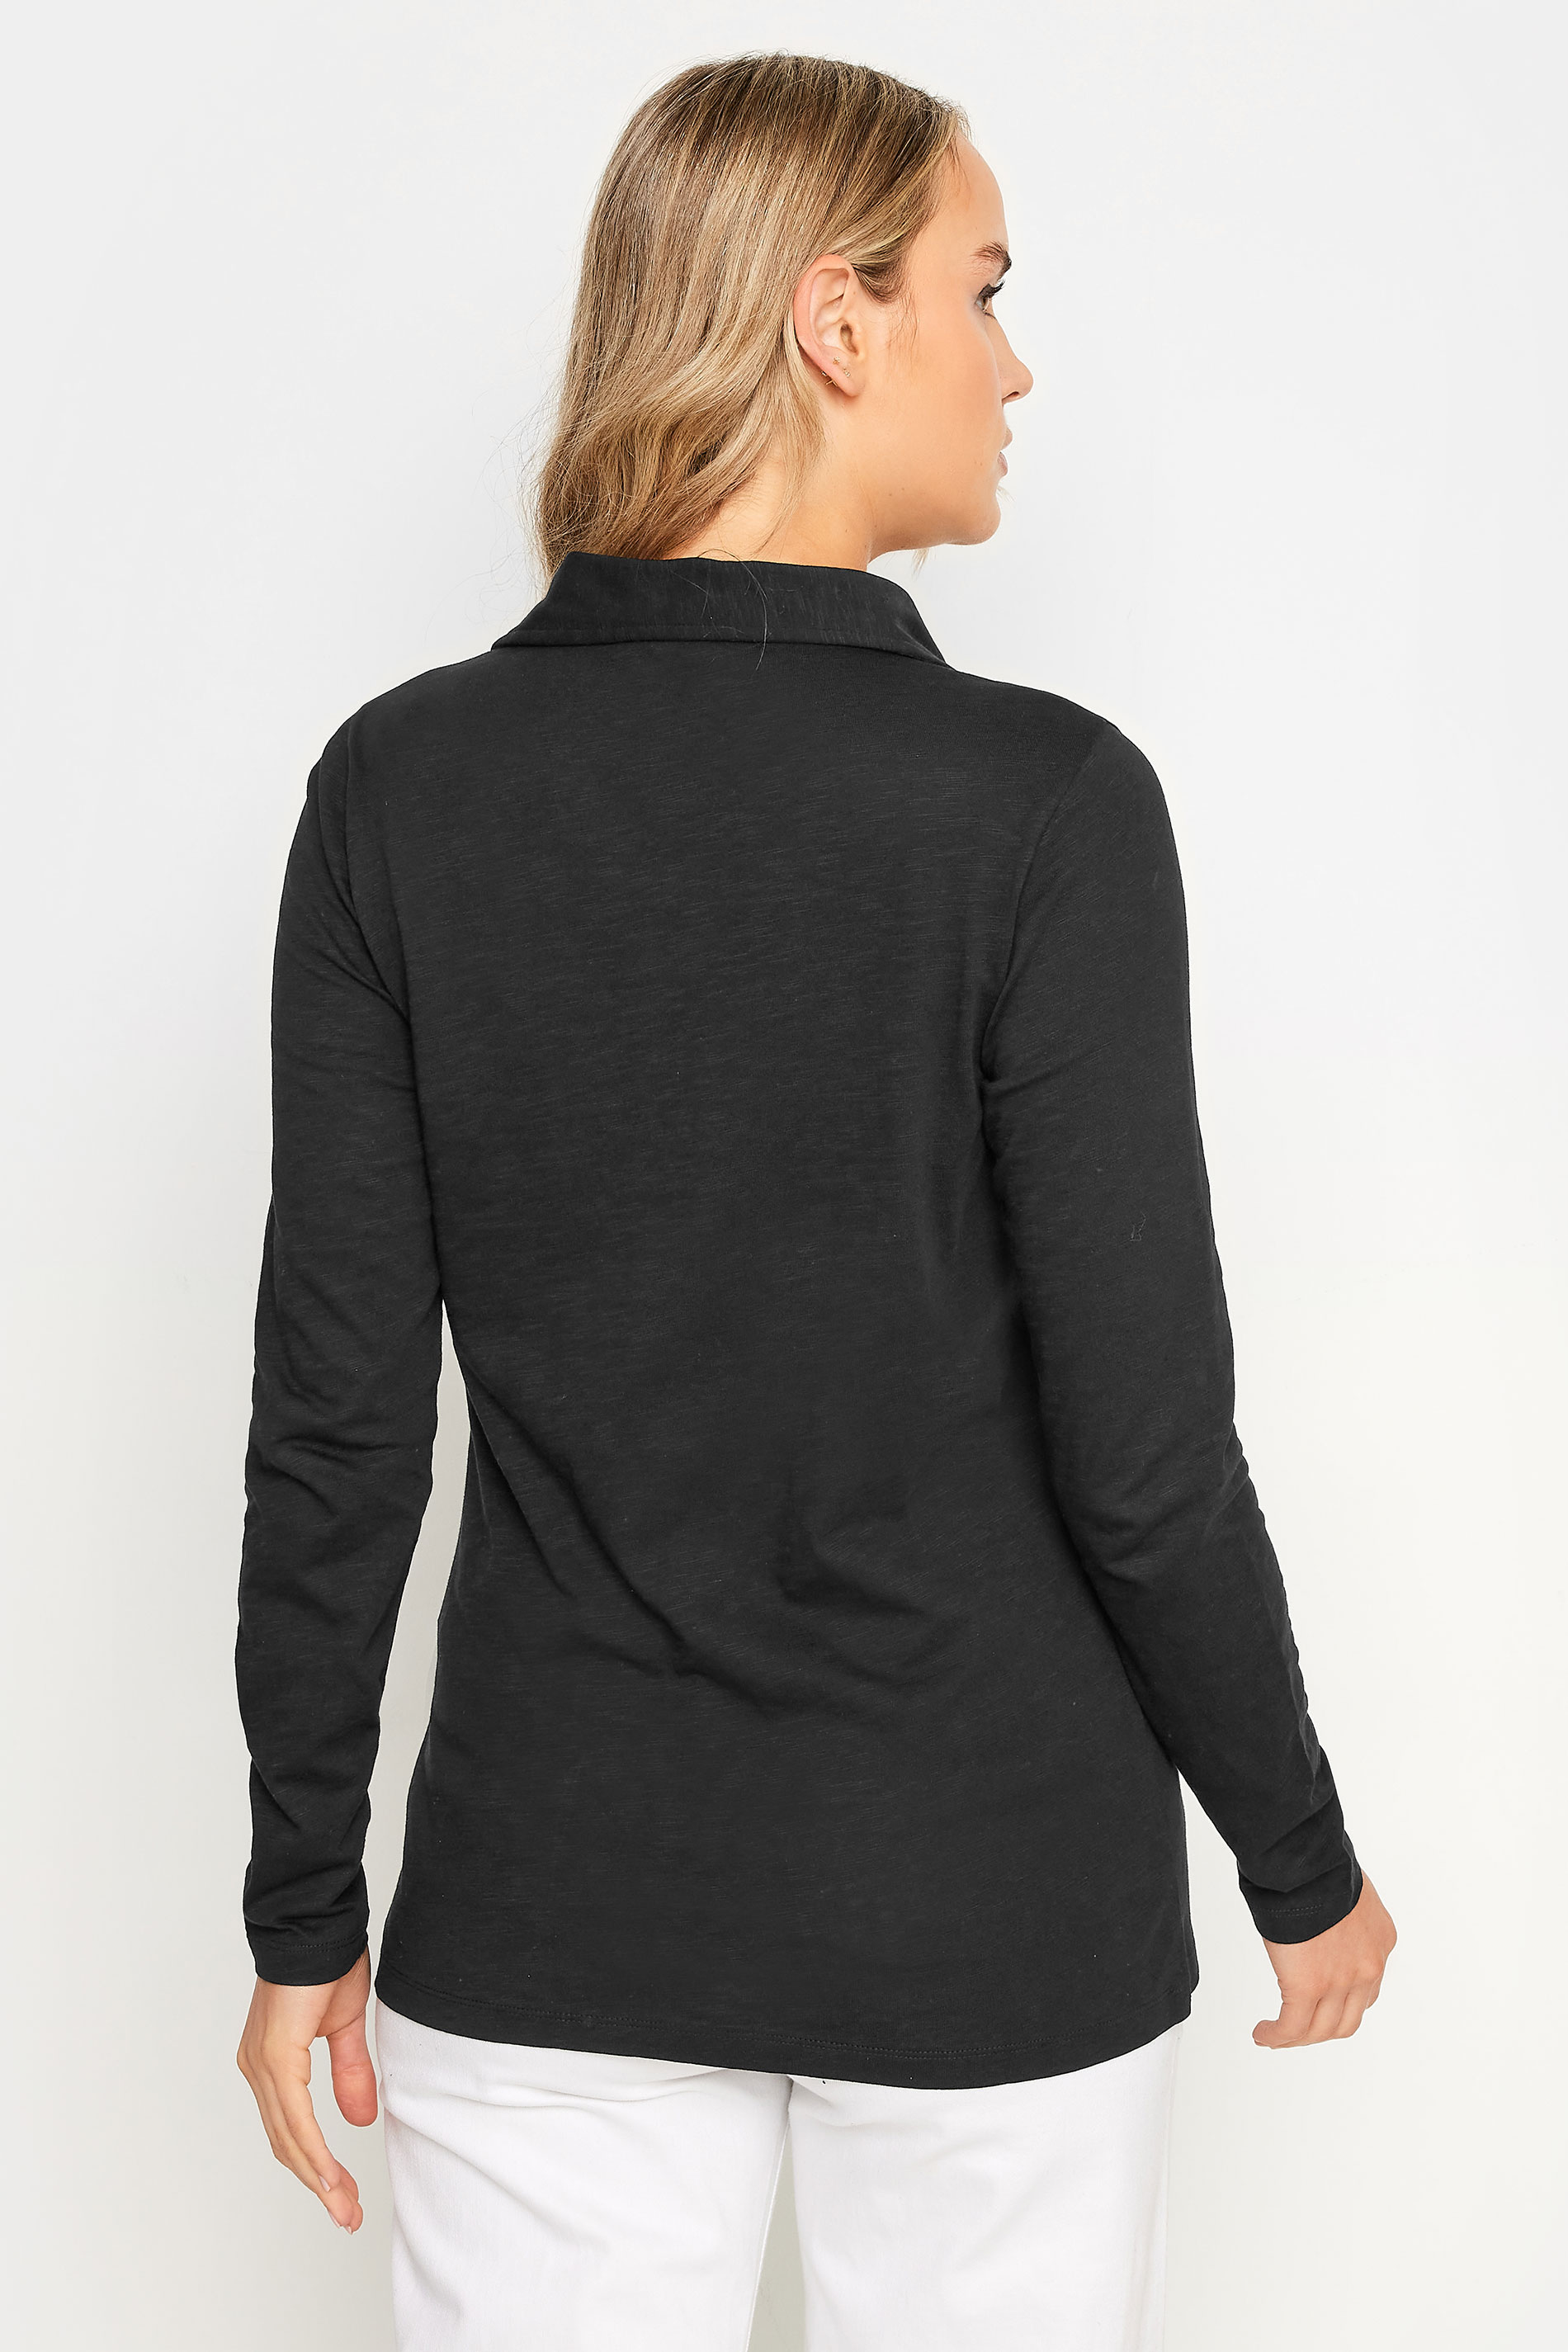 LTS Tall Women's Black Cotton Jersey Shirt | Long Tall Sally 3